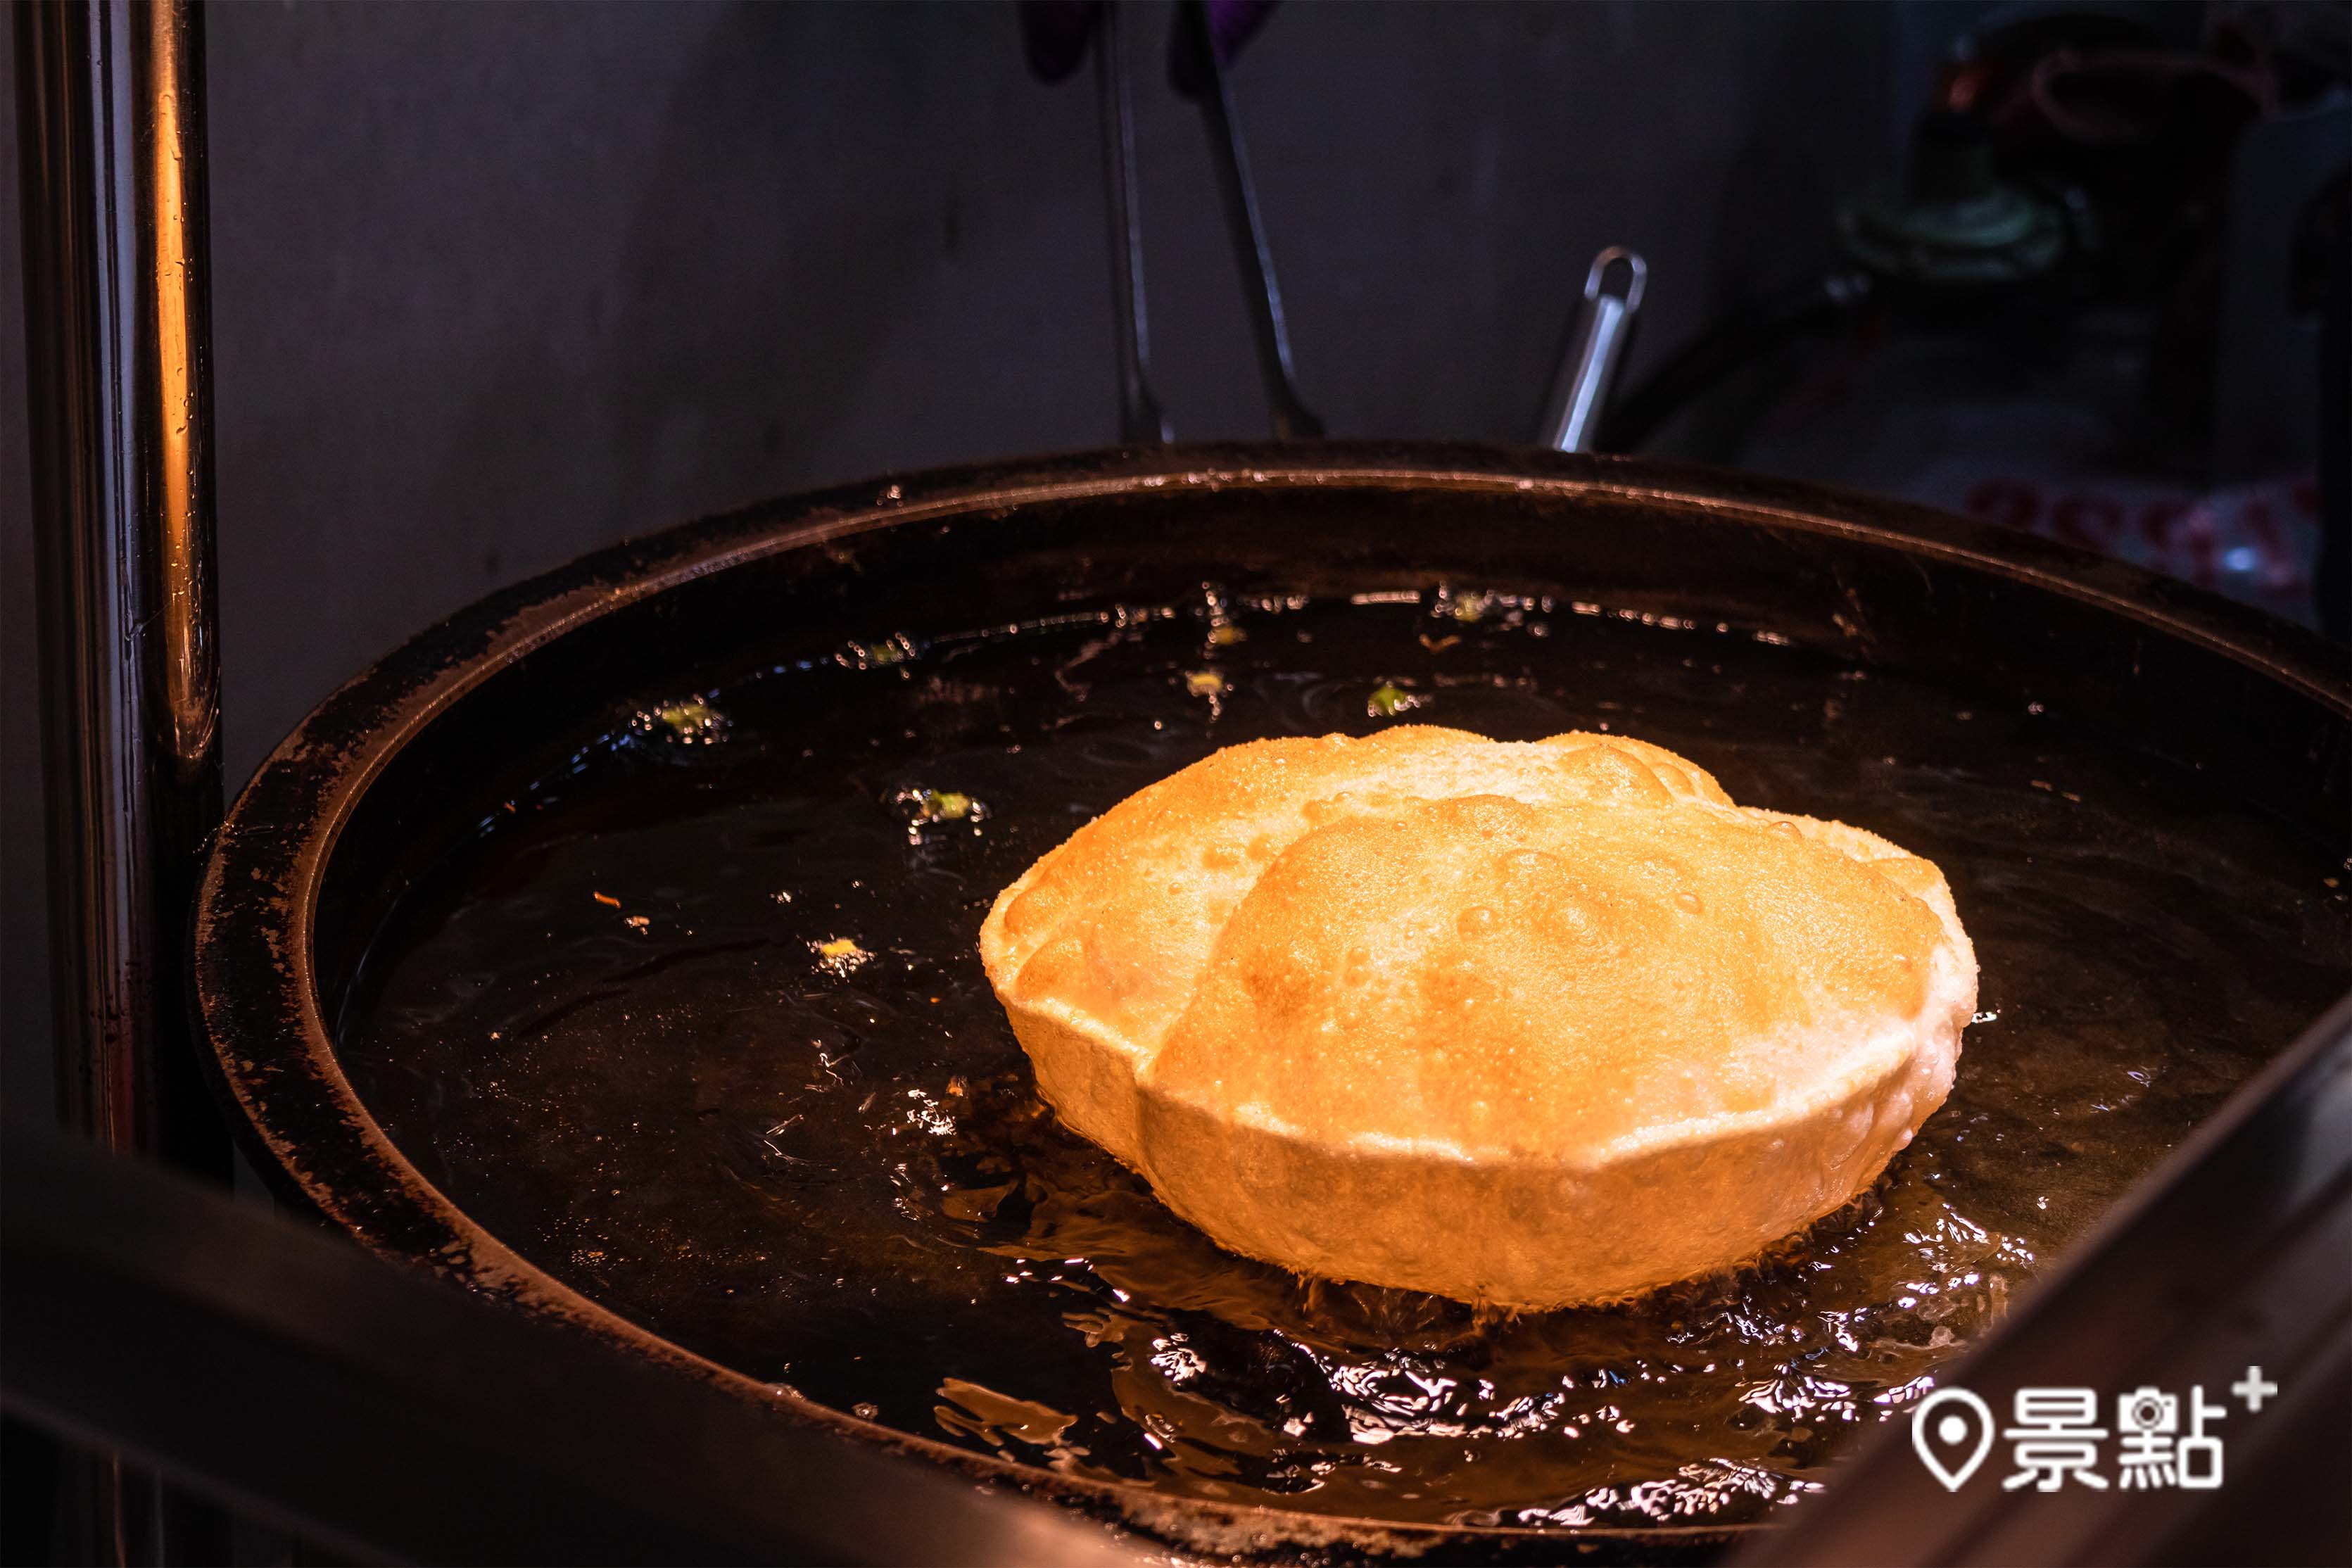 料理過程中，餅⽪會膨脹起來，像極了⼀顆氣球，超級可愛。